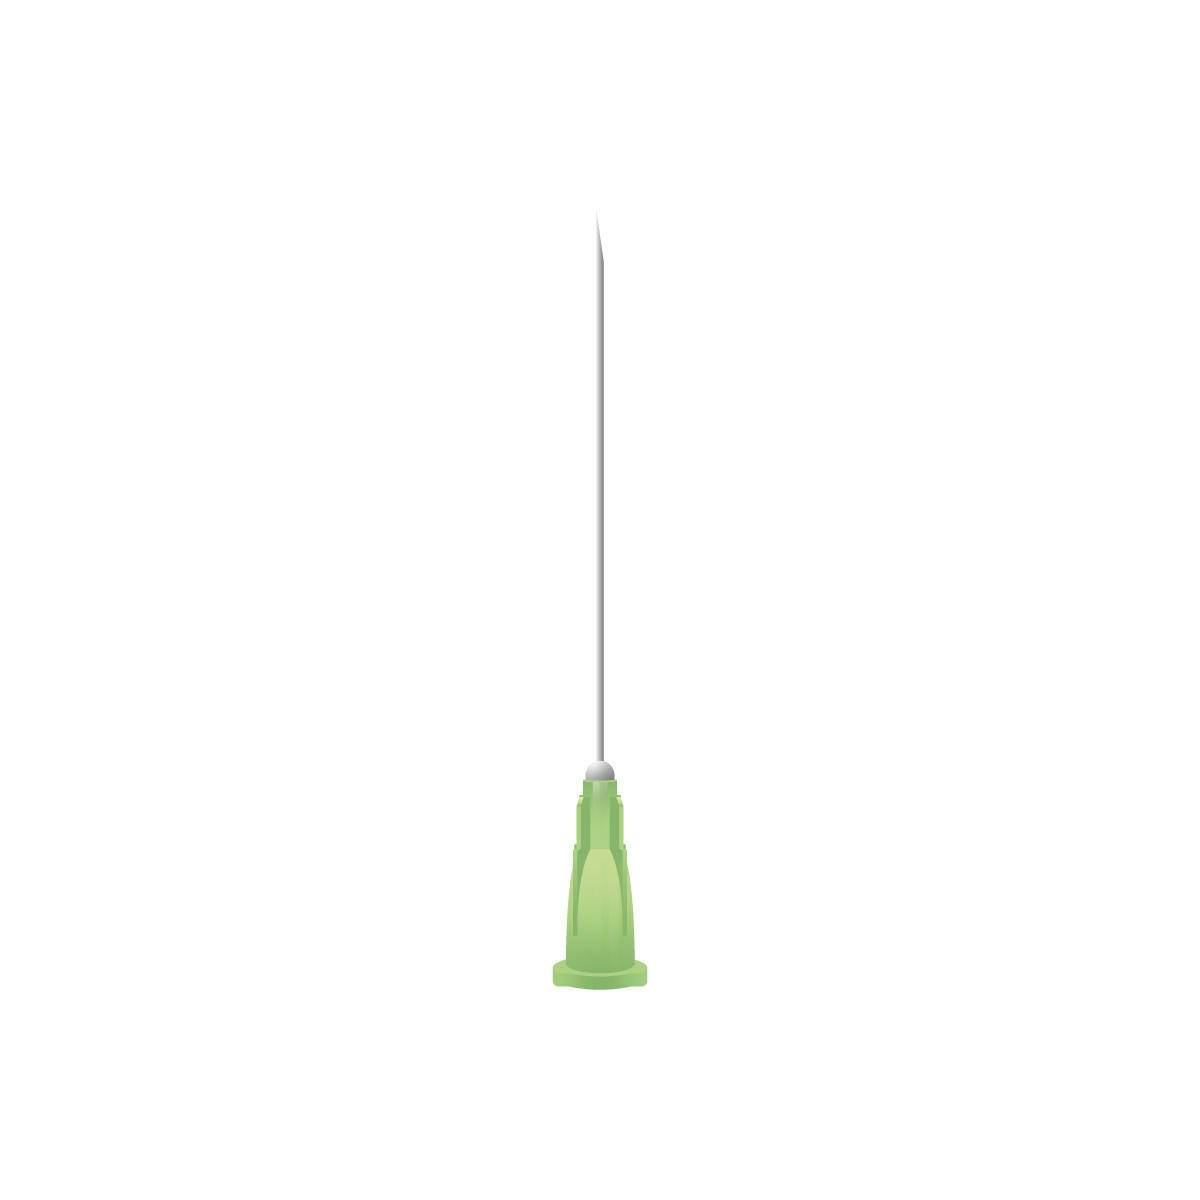 21g Green 1.5 inch Unisharp Needles